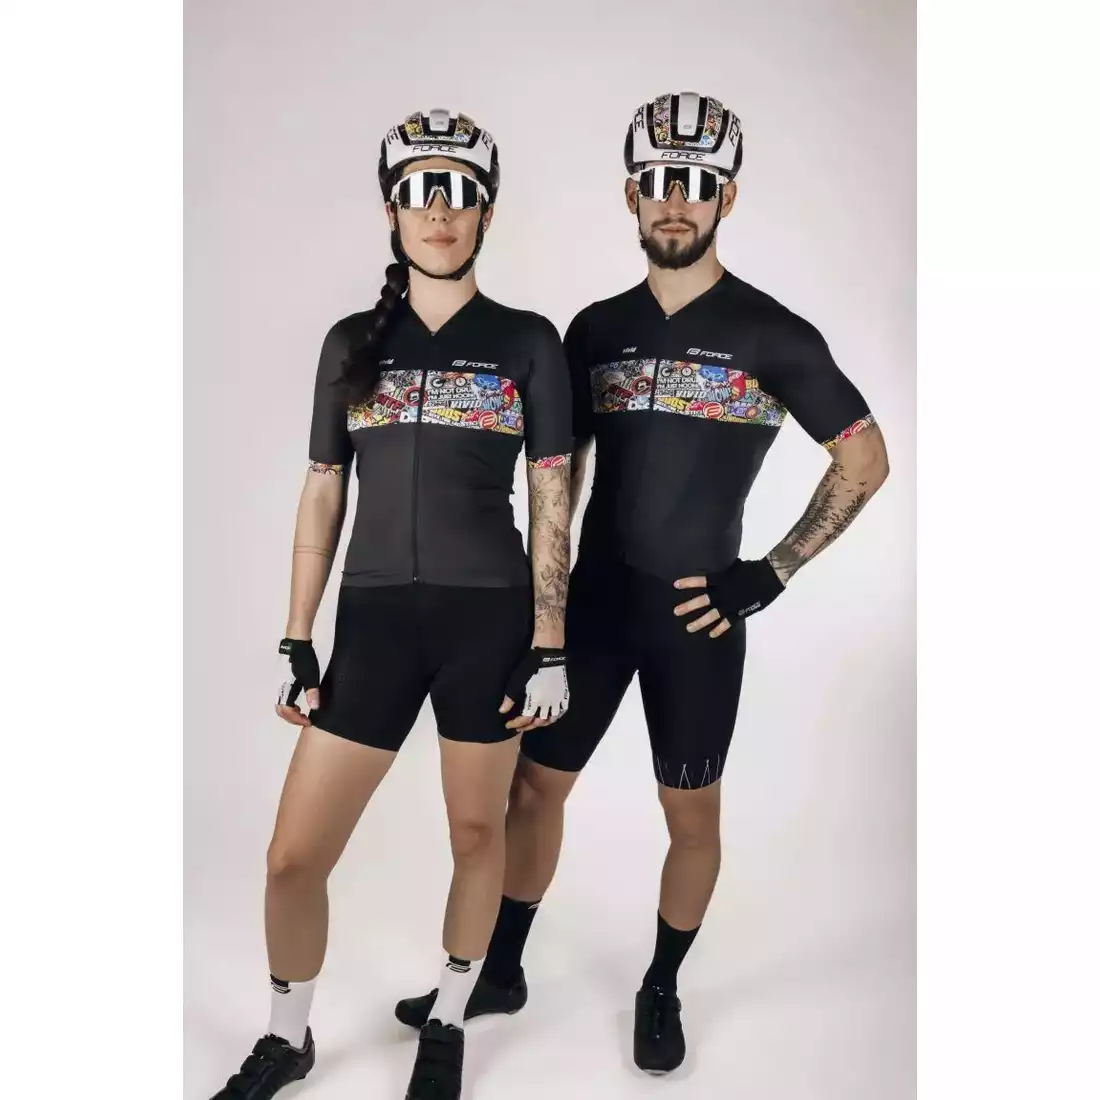 FORCE VIVID LADY tricou de ciclism pentru femei, negru